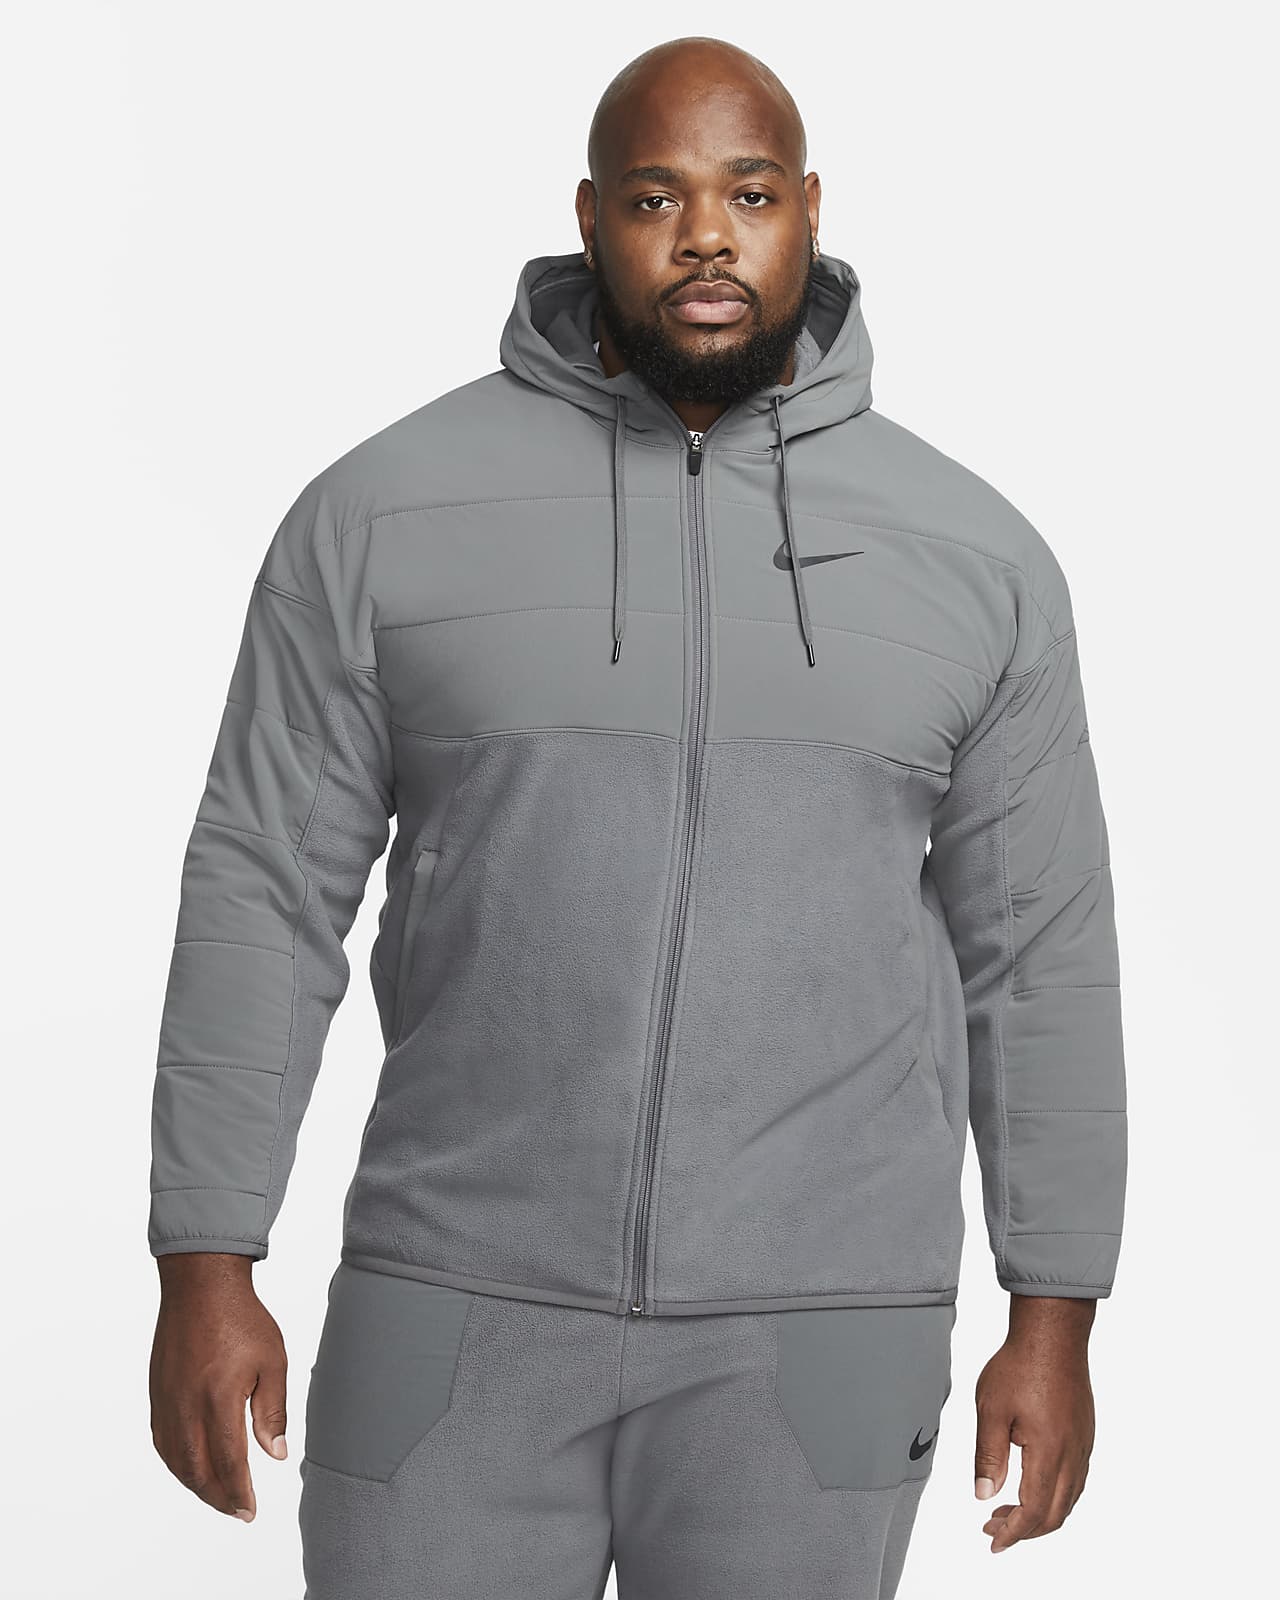 Therma-FIT Winterized Full-Zip Hoodie. Nike.com